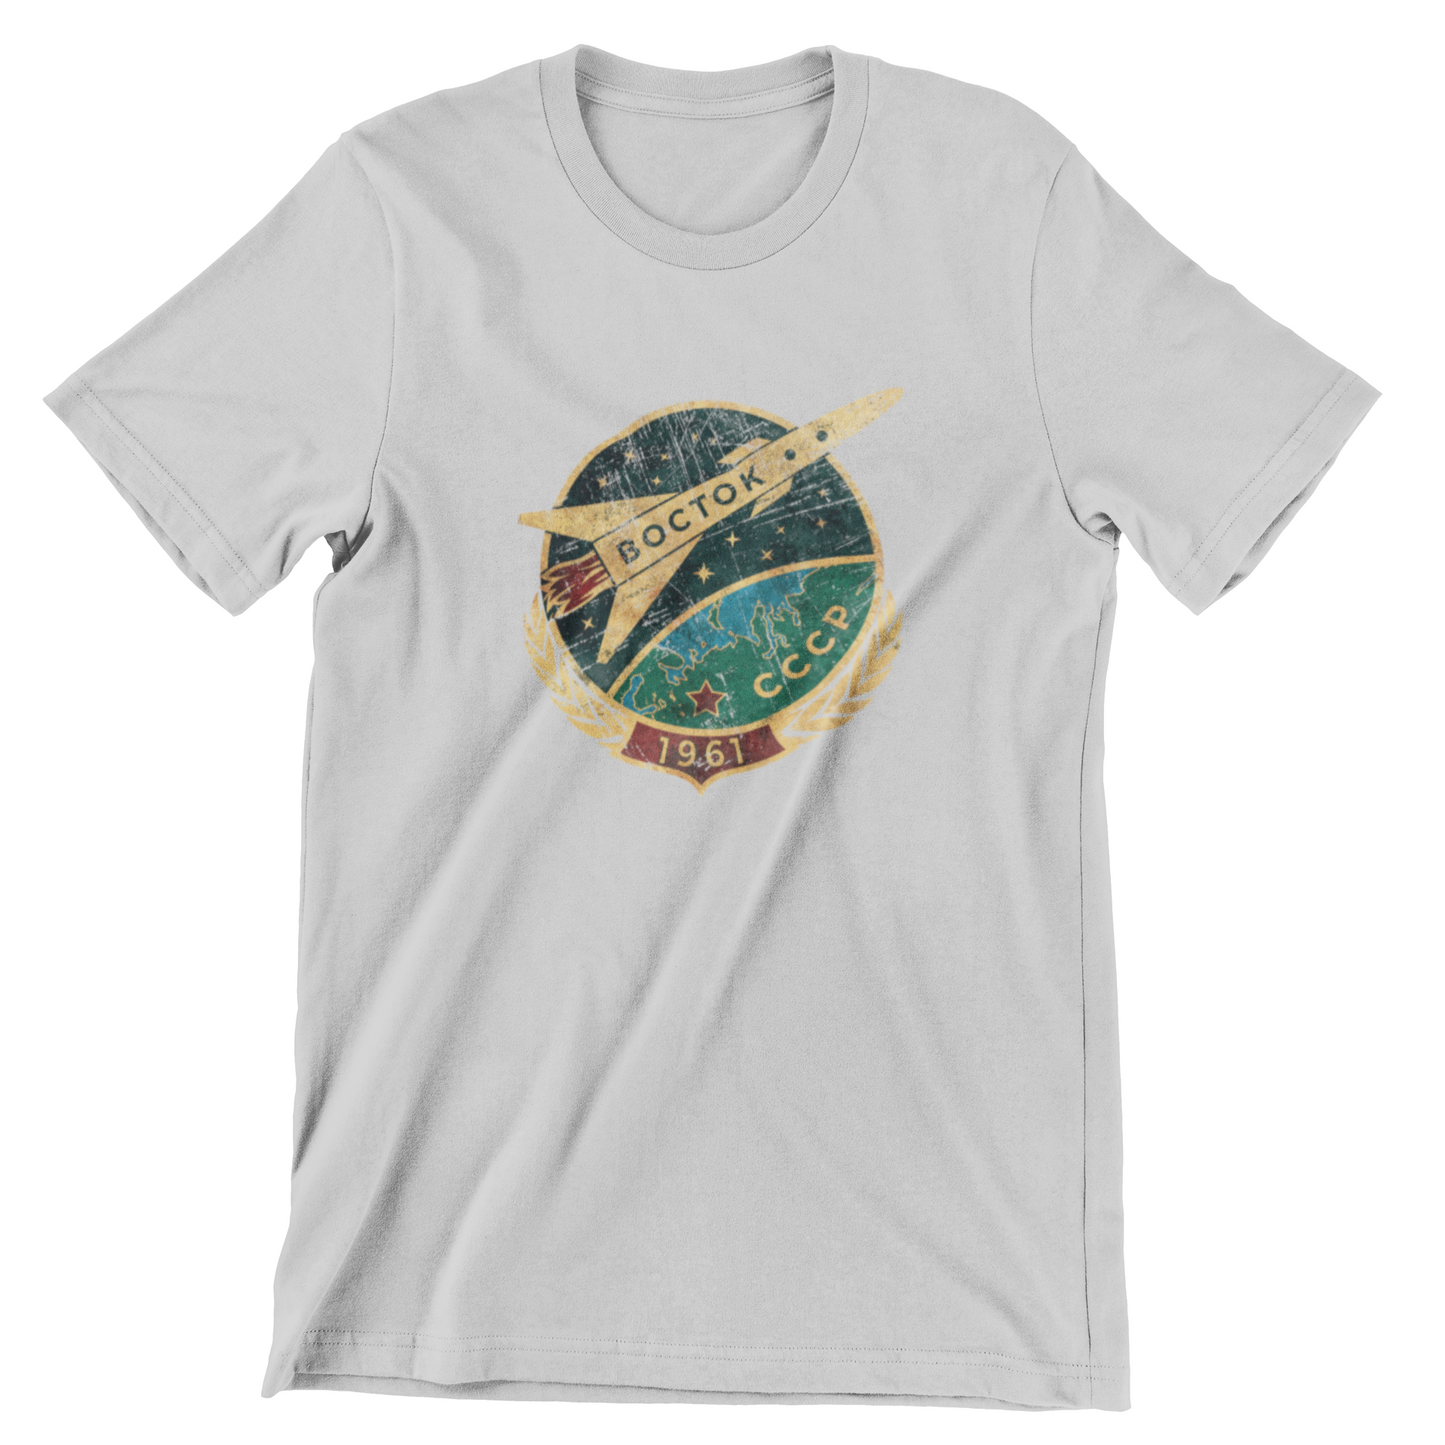 Vostok Spaceship 1961 Shirt